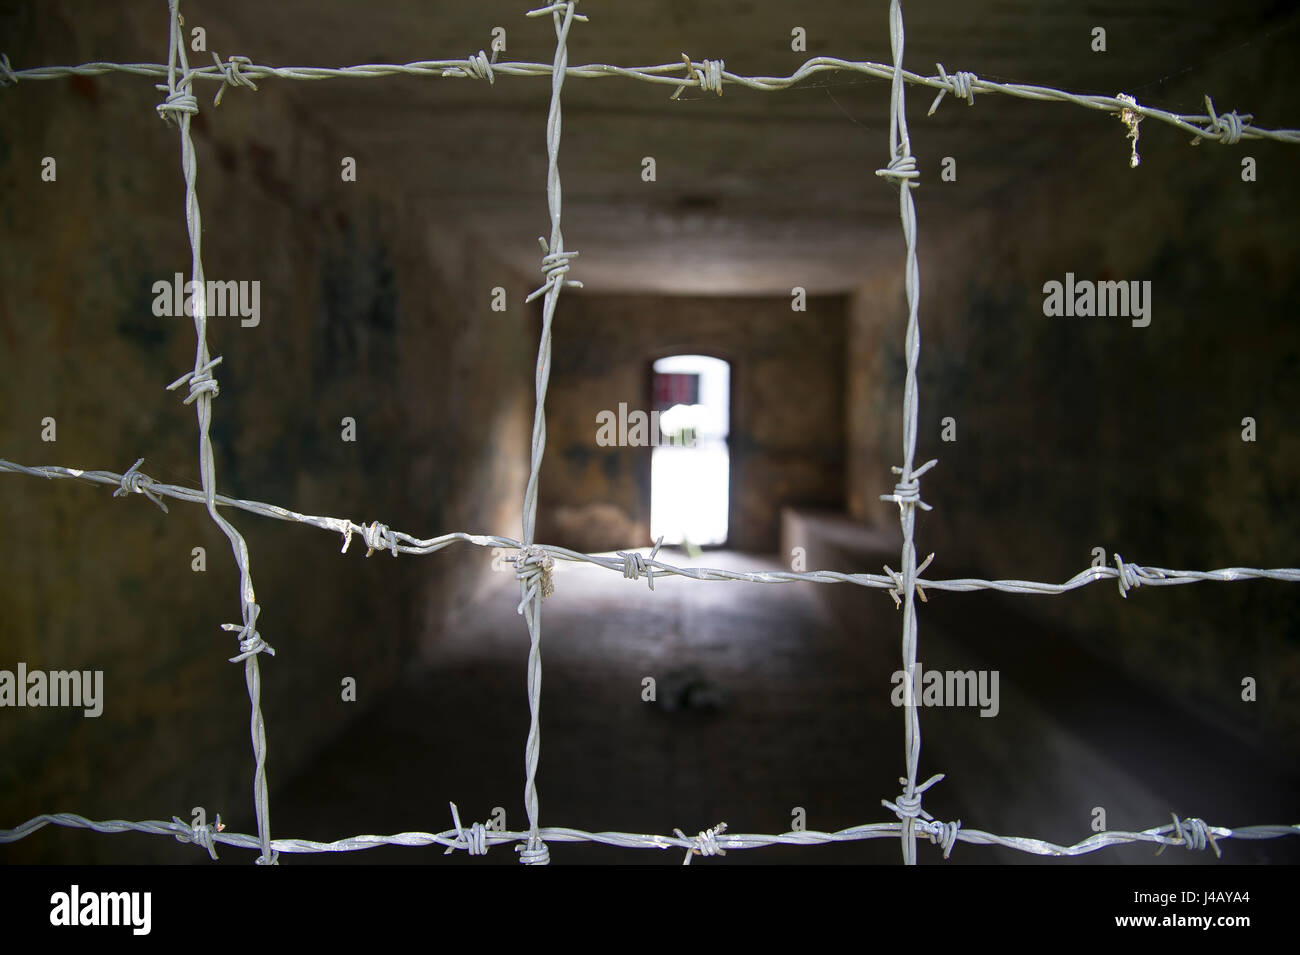 Innen Gaskammer in Nazi-deutschen Konzentrationslager KL Stutthof in 72 Jahrestag der Befreiung des Konzentrationslagers durch die Rote Armee im Museum o Stockfoto